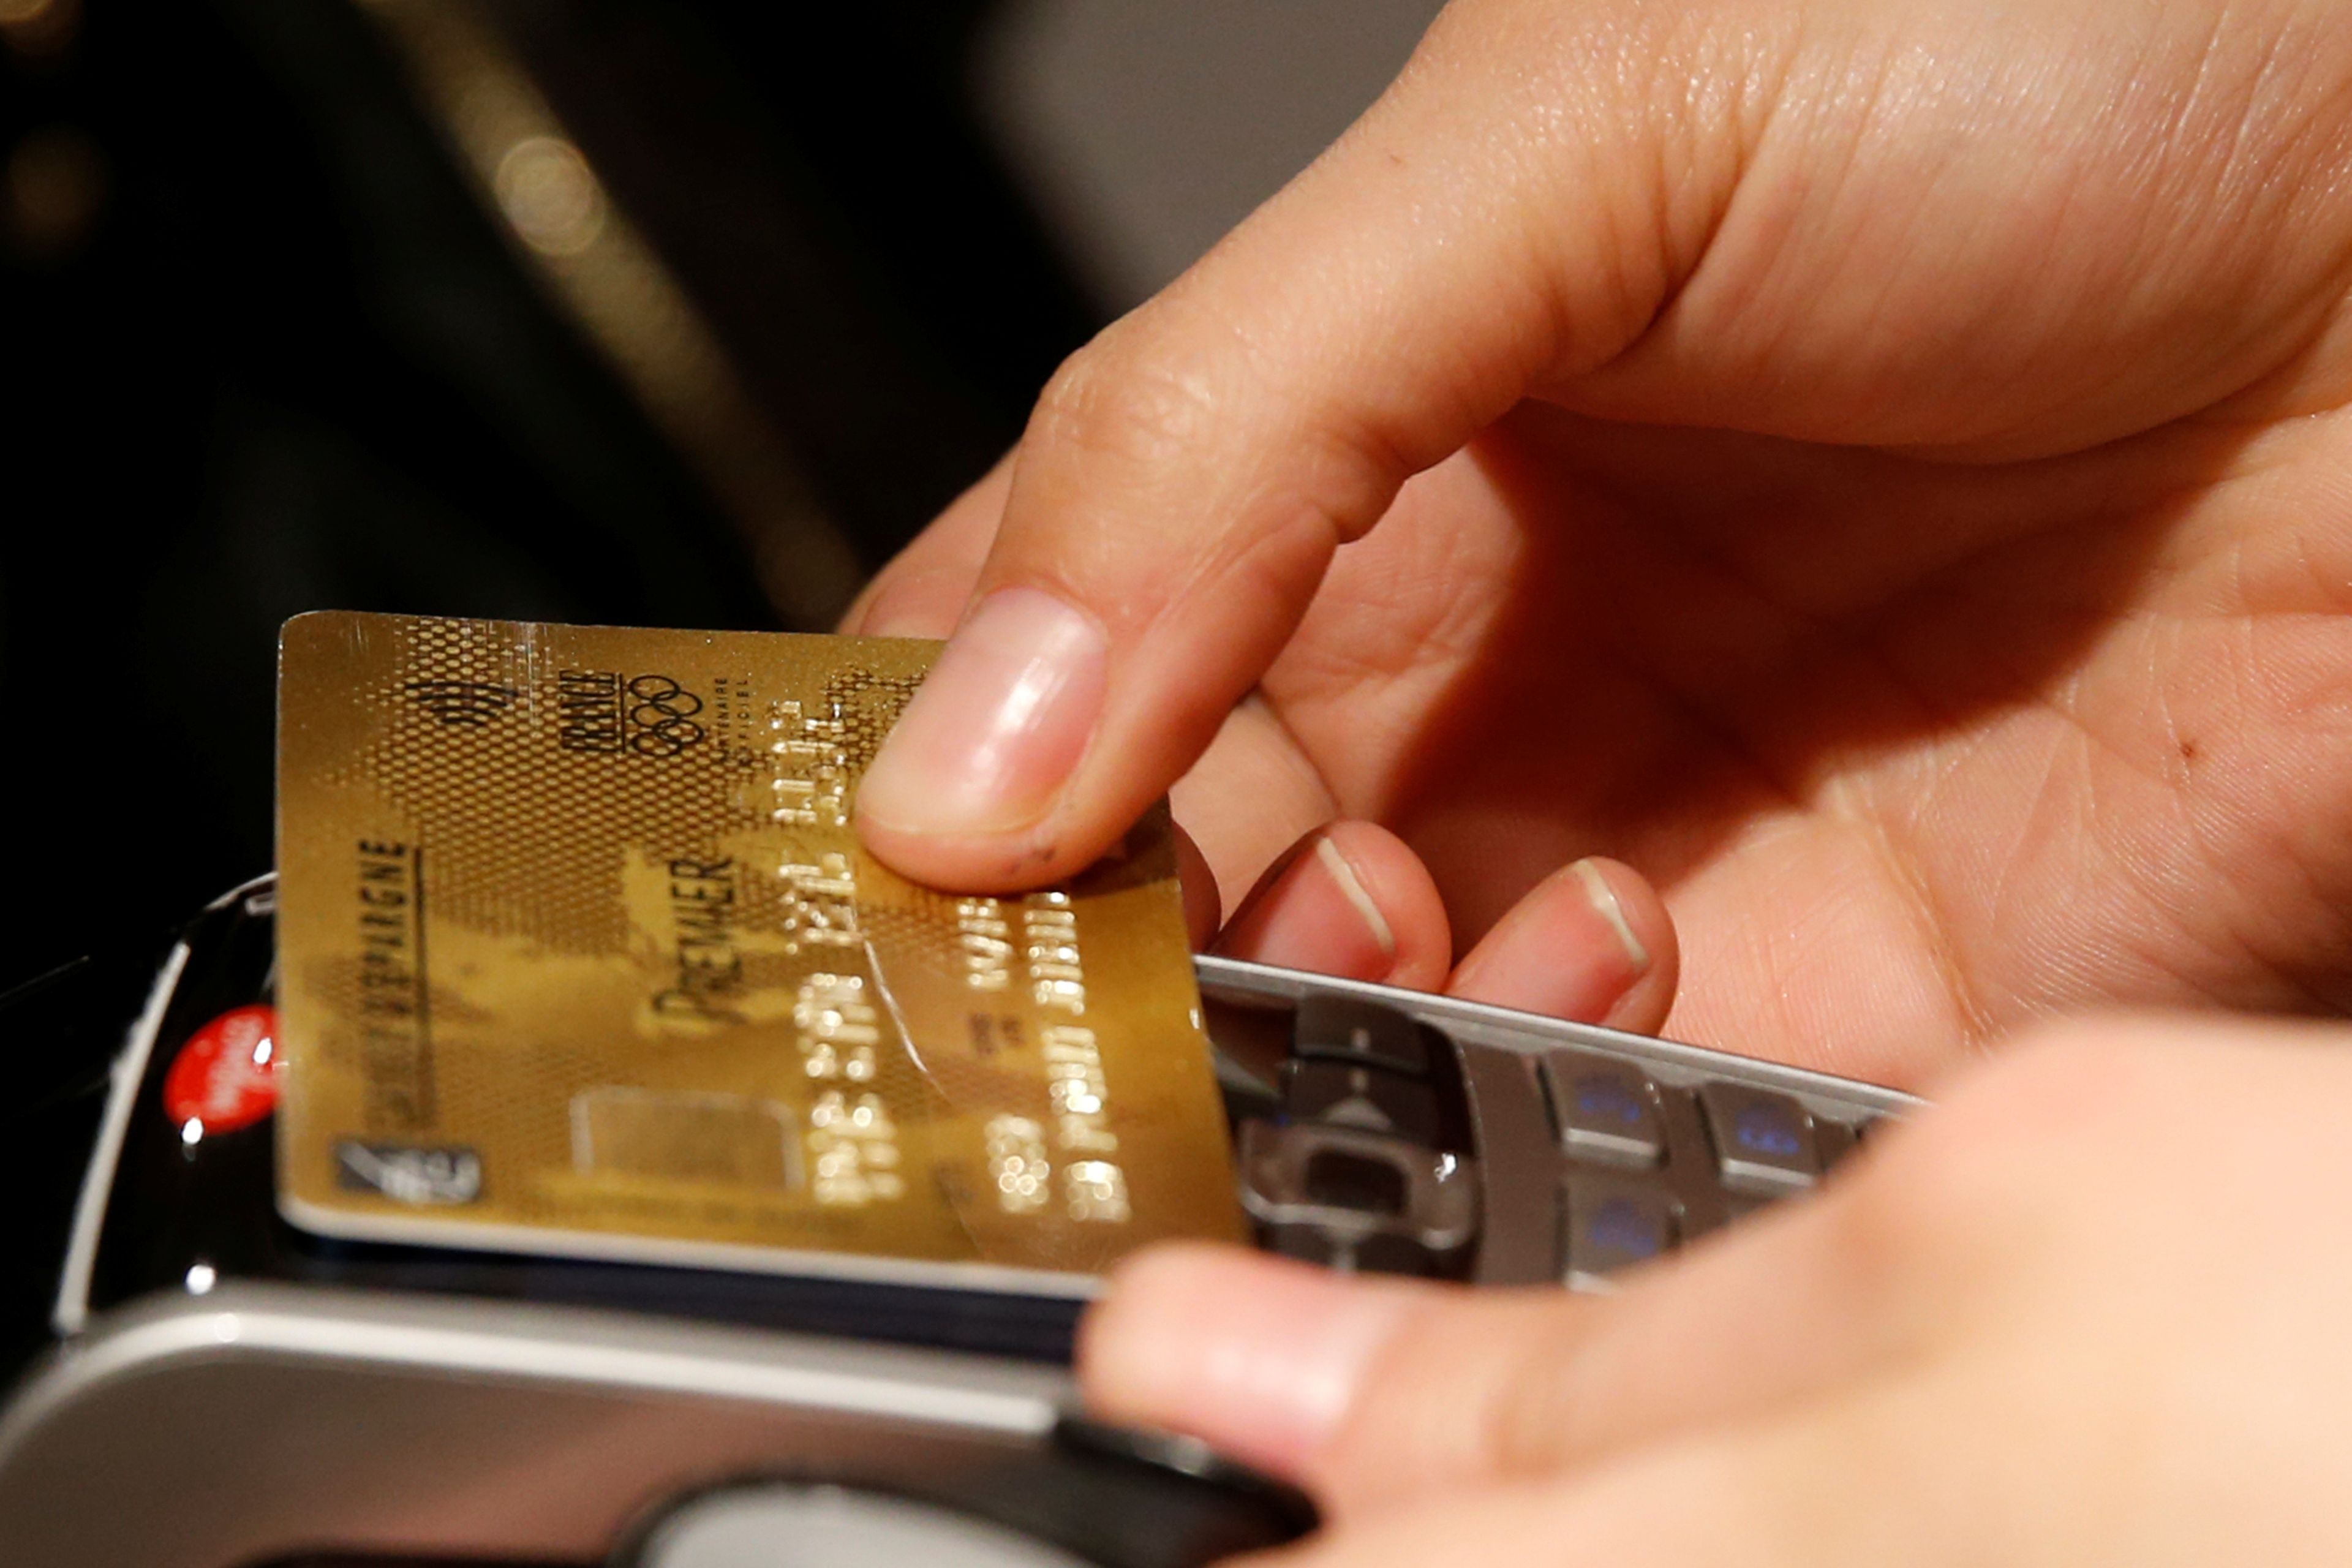 Cliente pagando con tarjeta de crédito